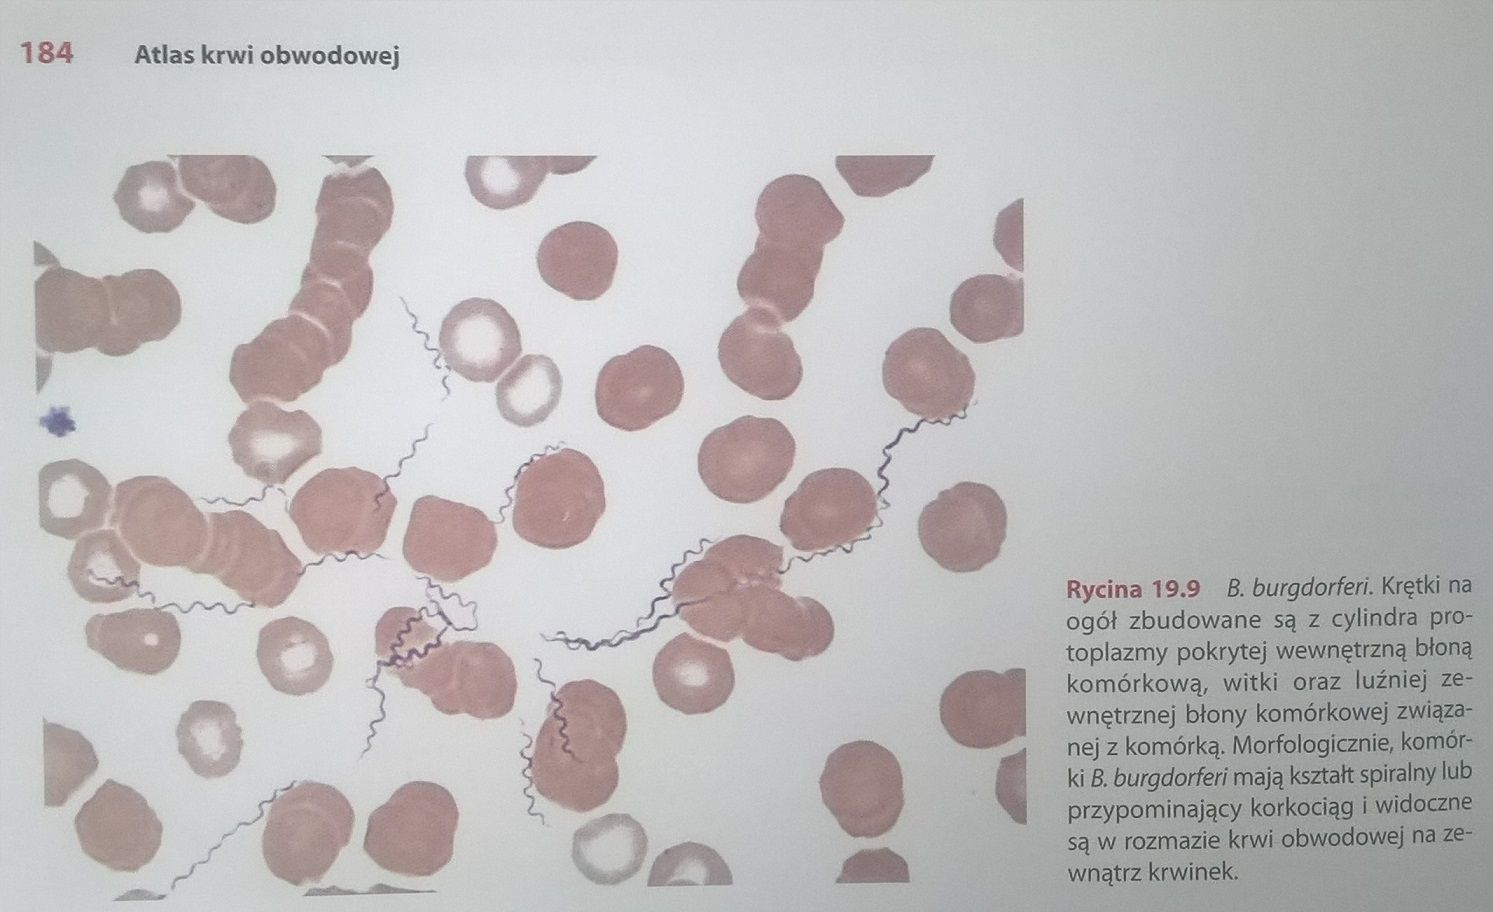 Zdjęcie a altasu krwi obwodowej. Widać obraz krwi pod mikroskopem i krętki bakterii borrelii. 